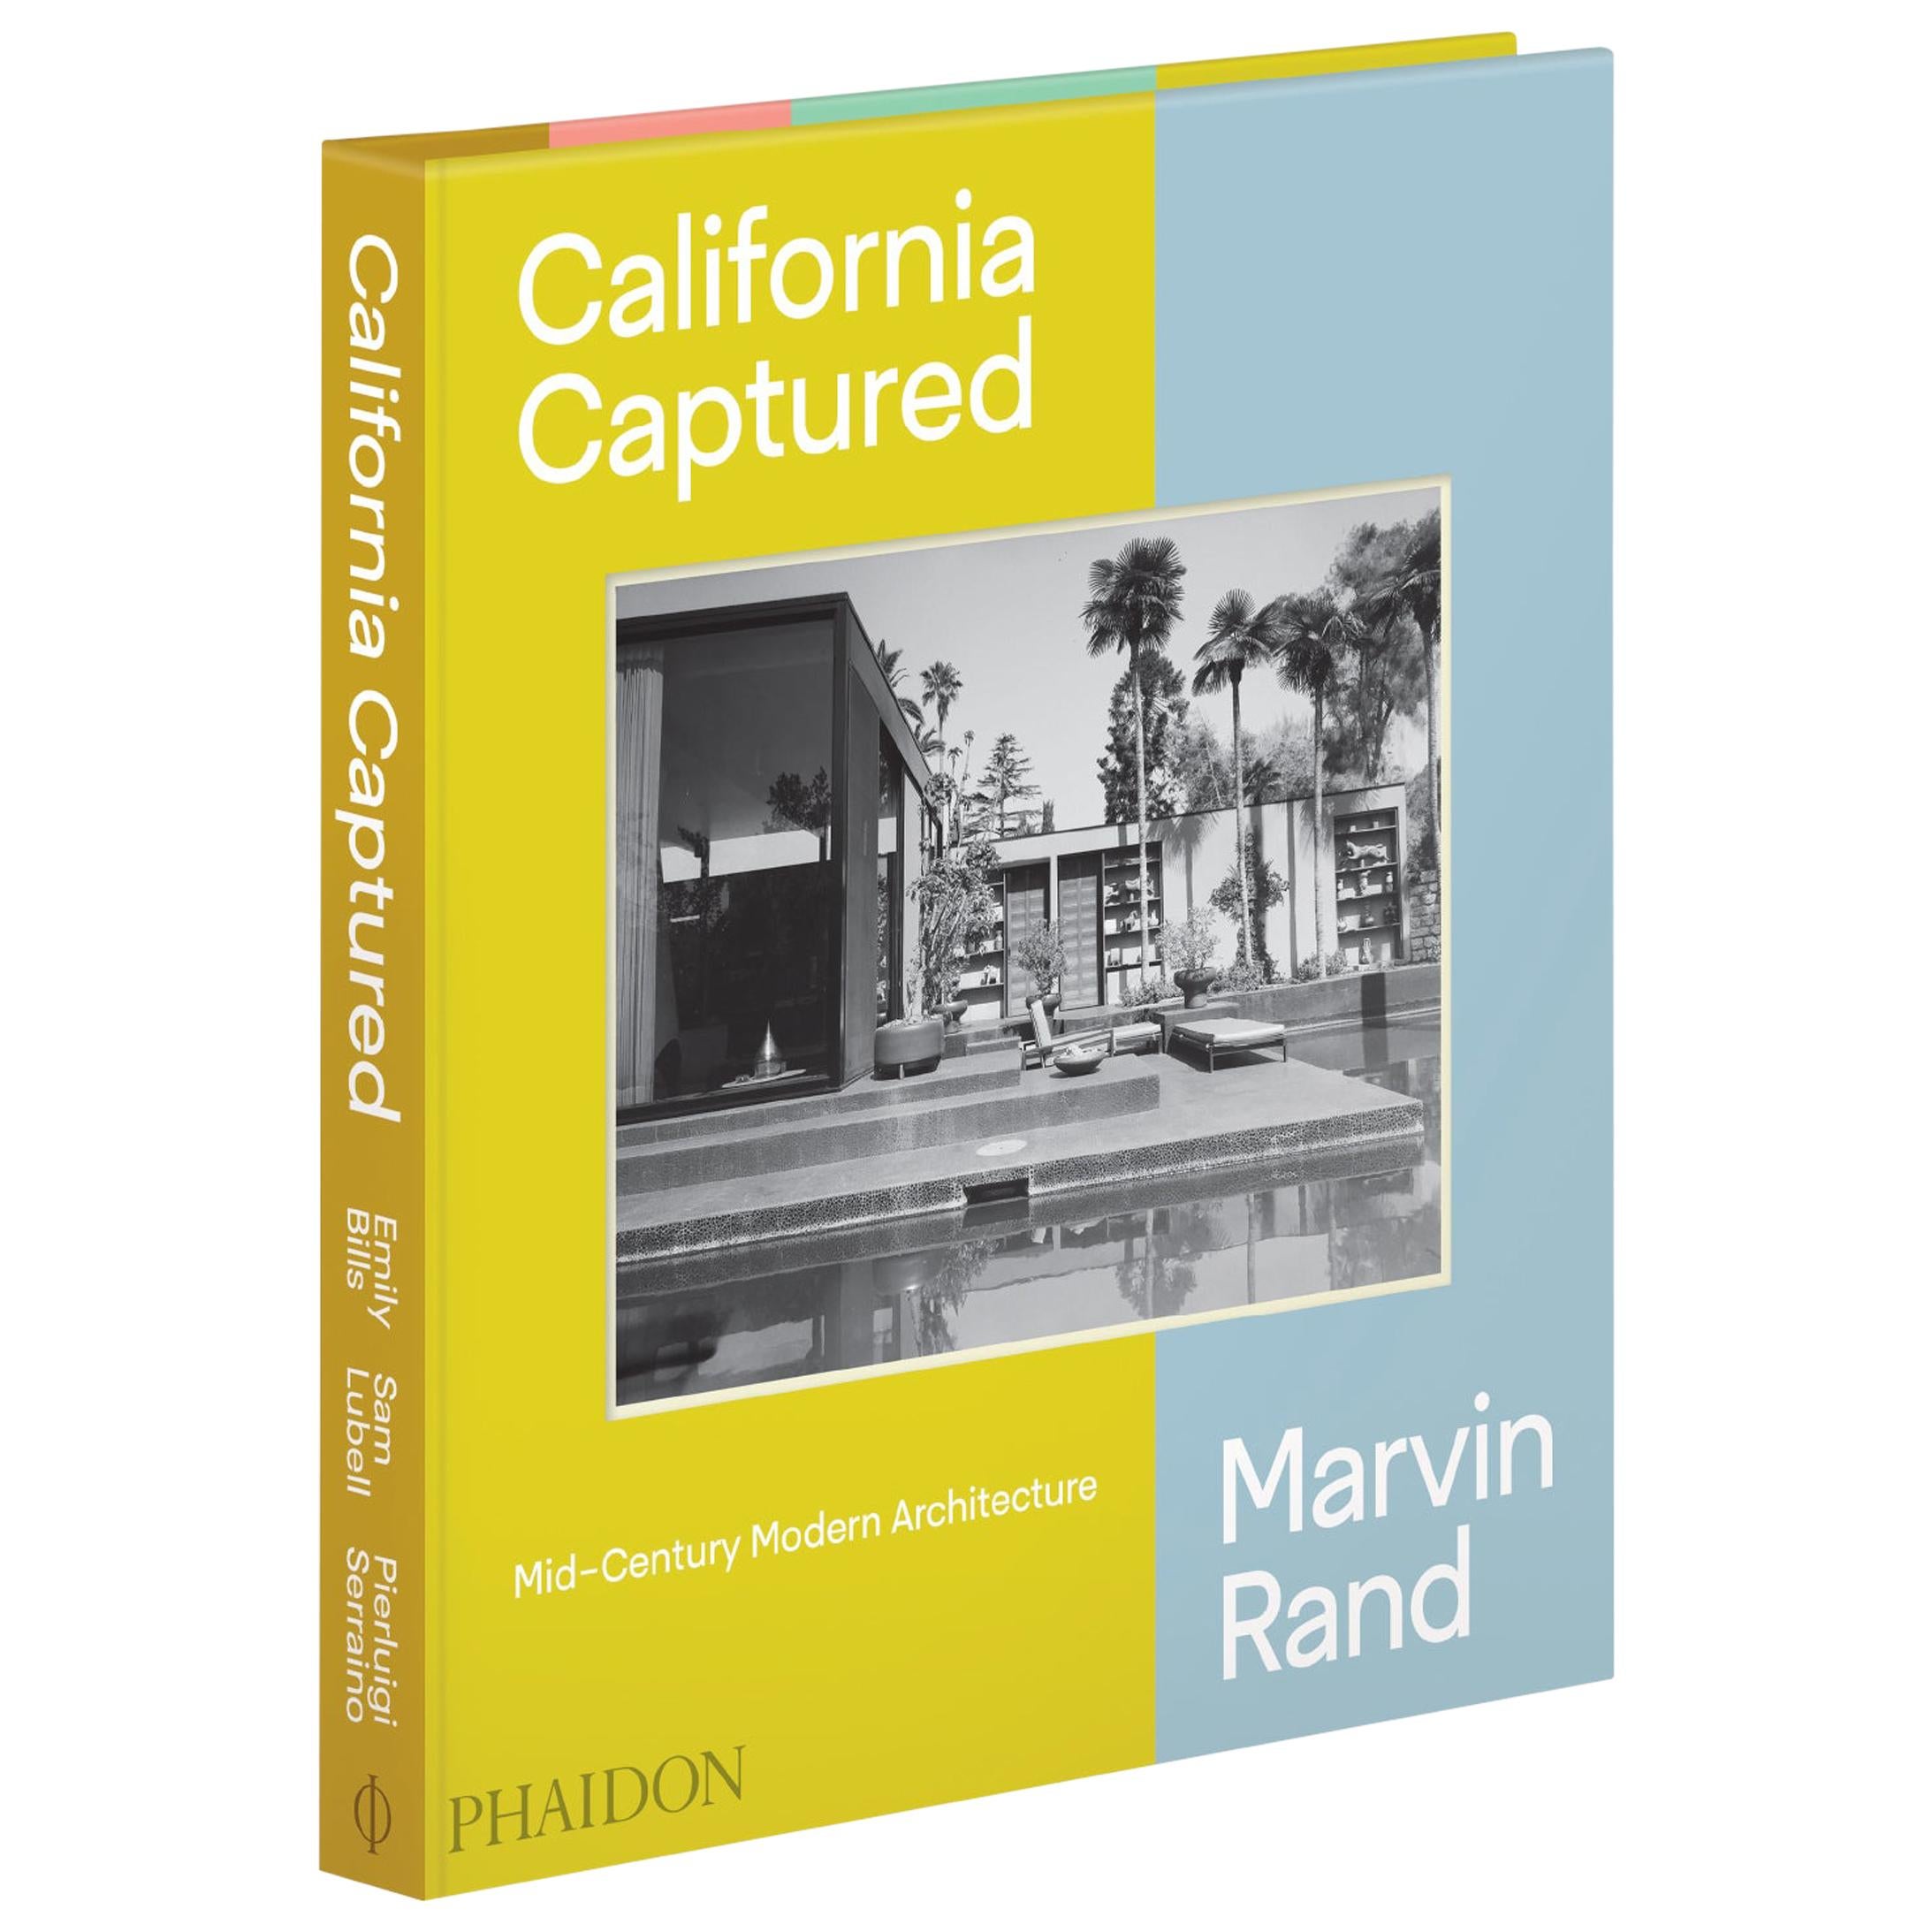 Kalifornien fängt die moderne Architektur der Jahrhundertmitte ein, Marvin Rand